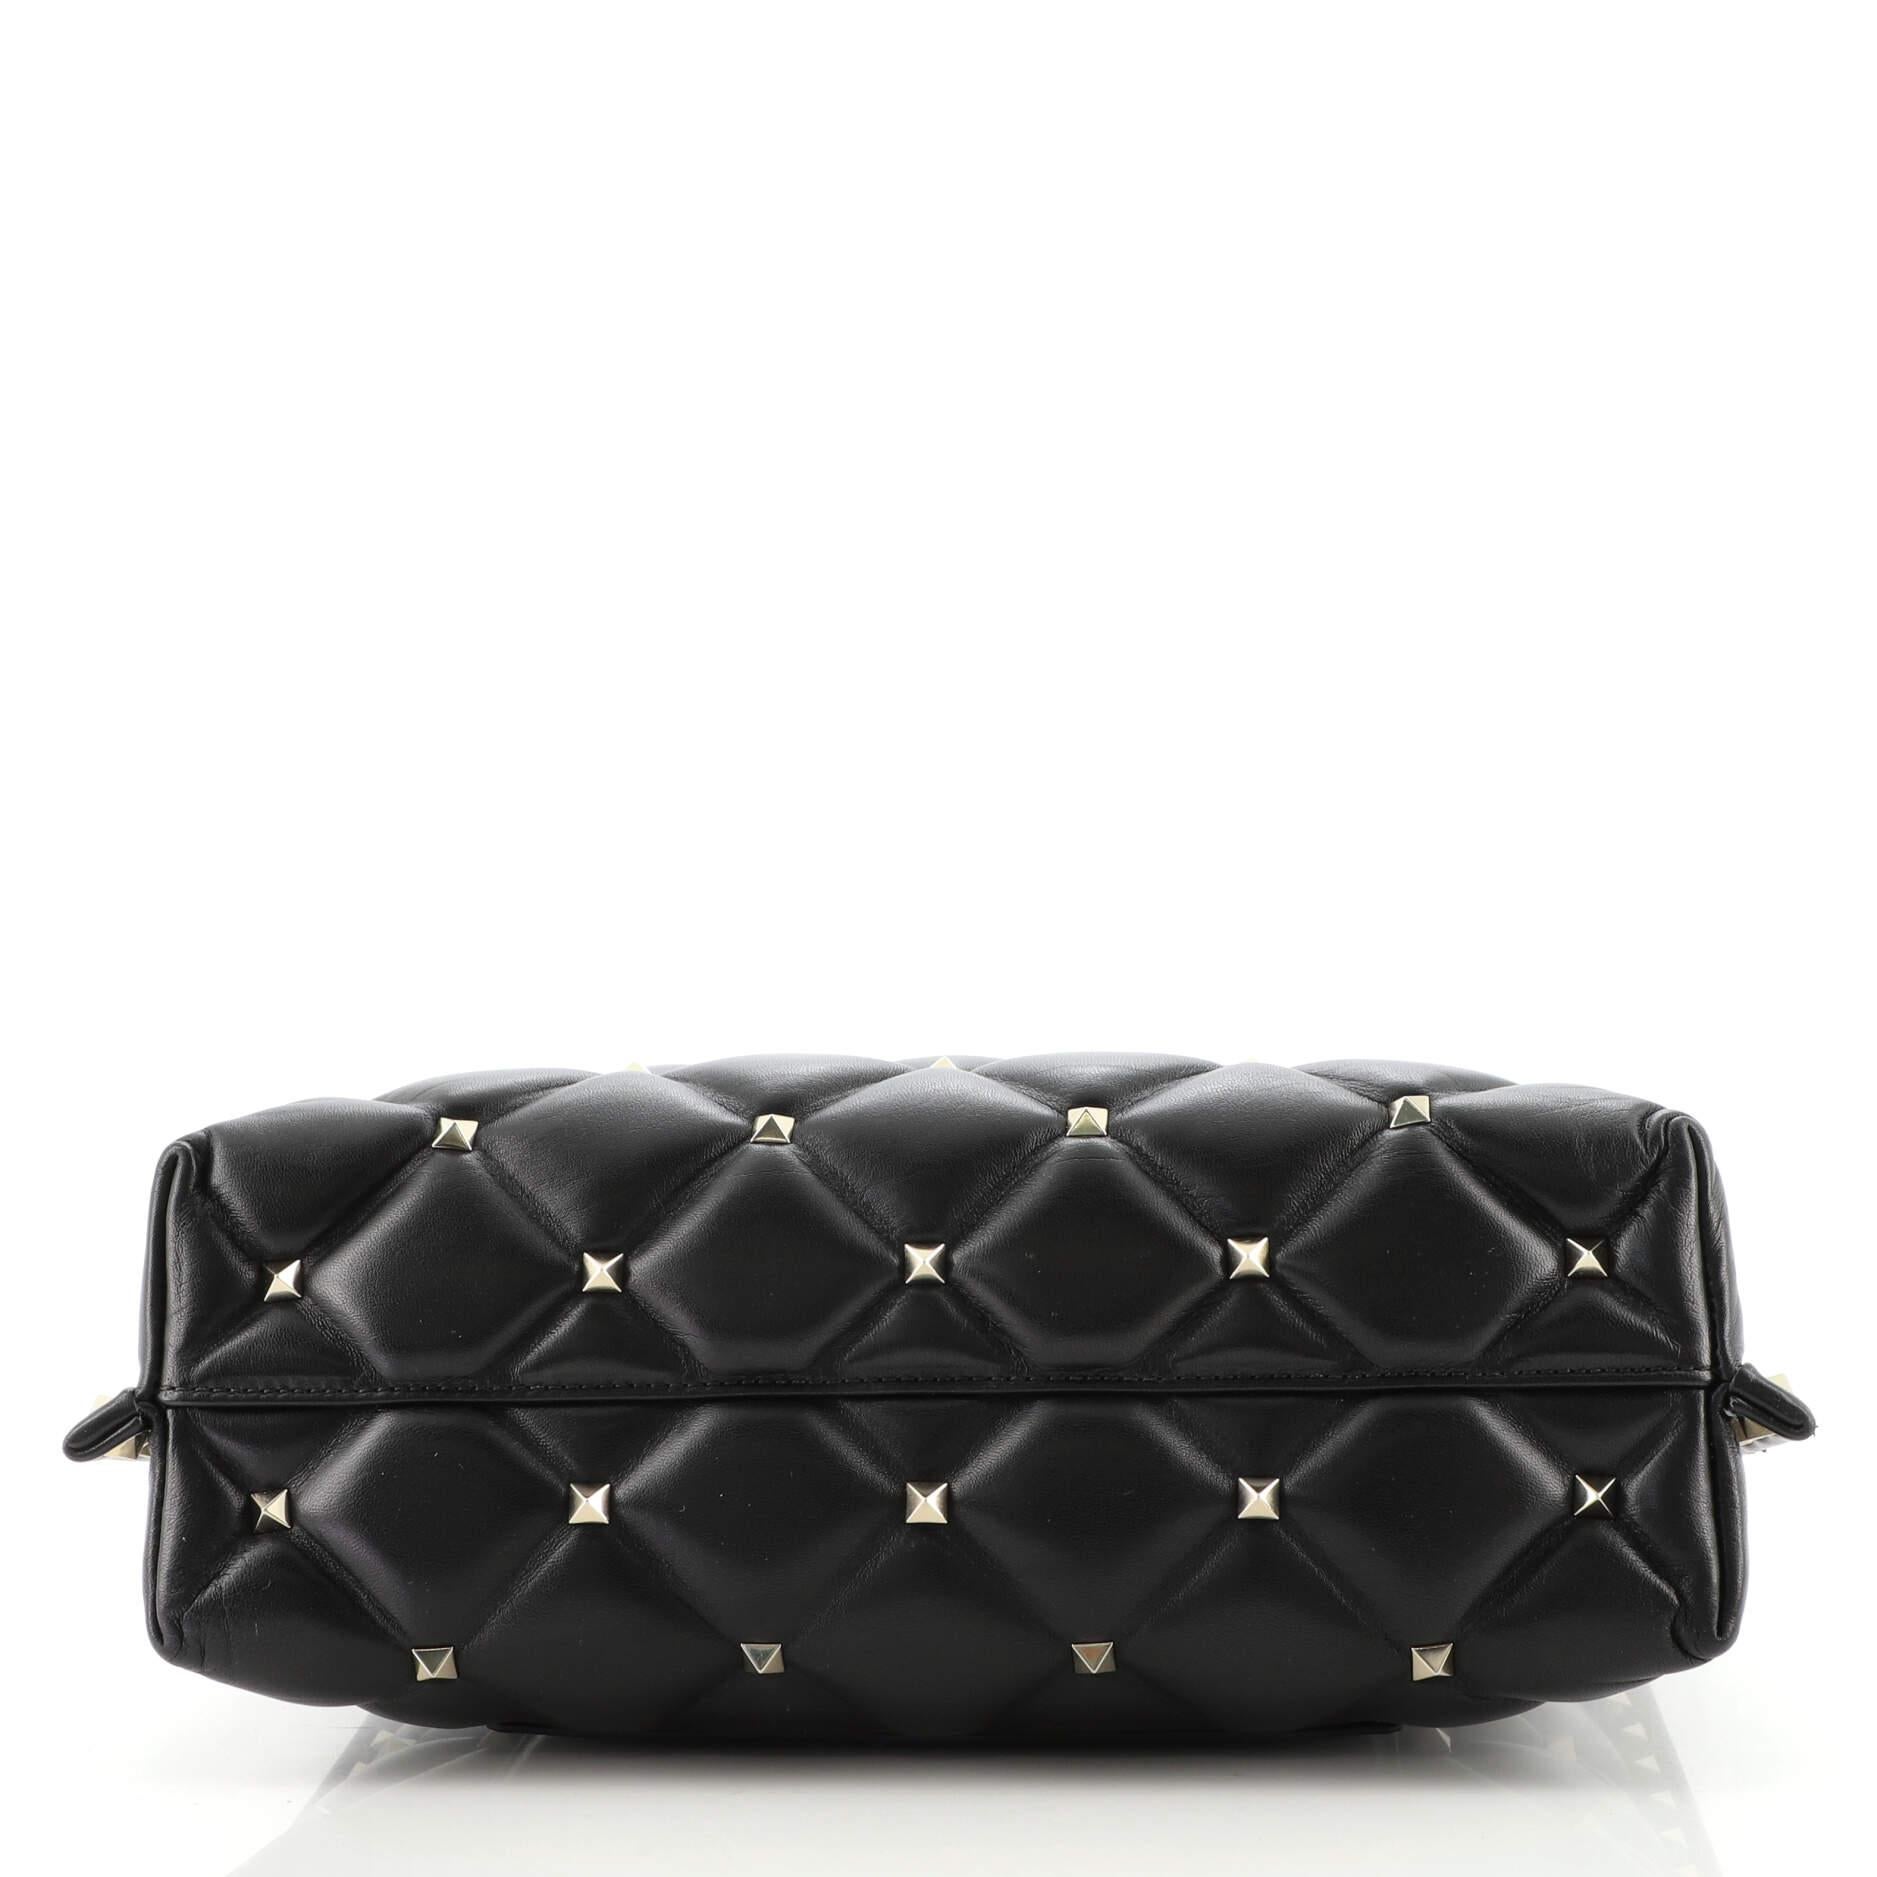 Black Valentino Candystud Messenger Bag Leather Large